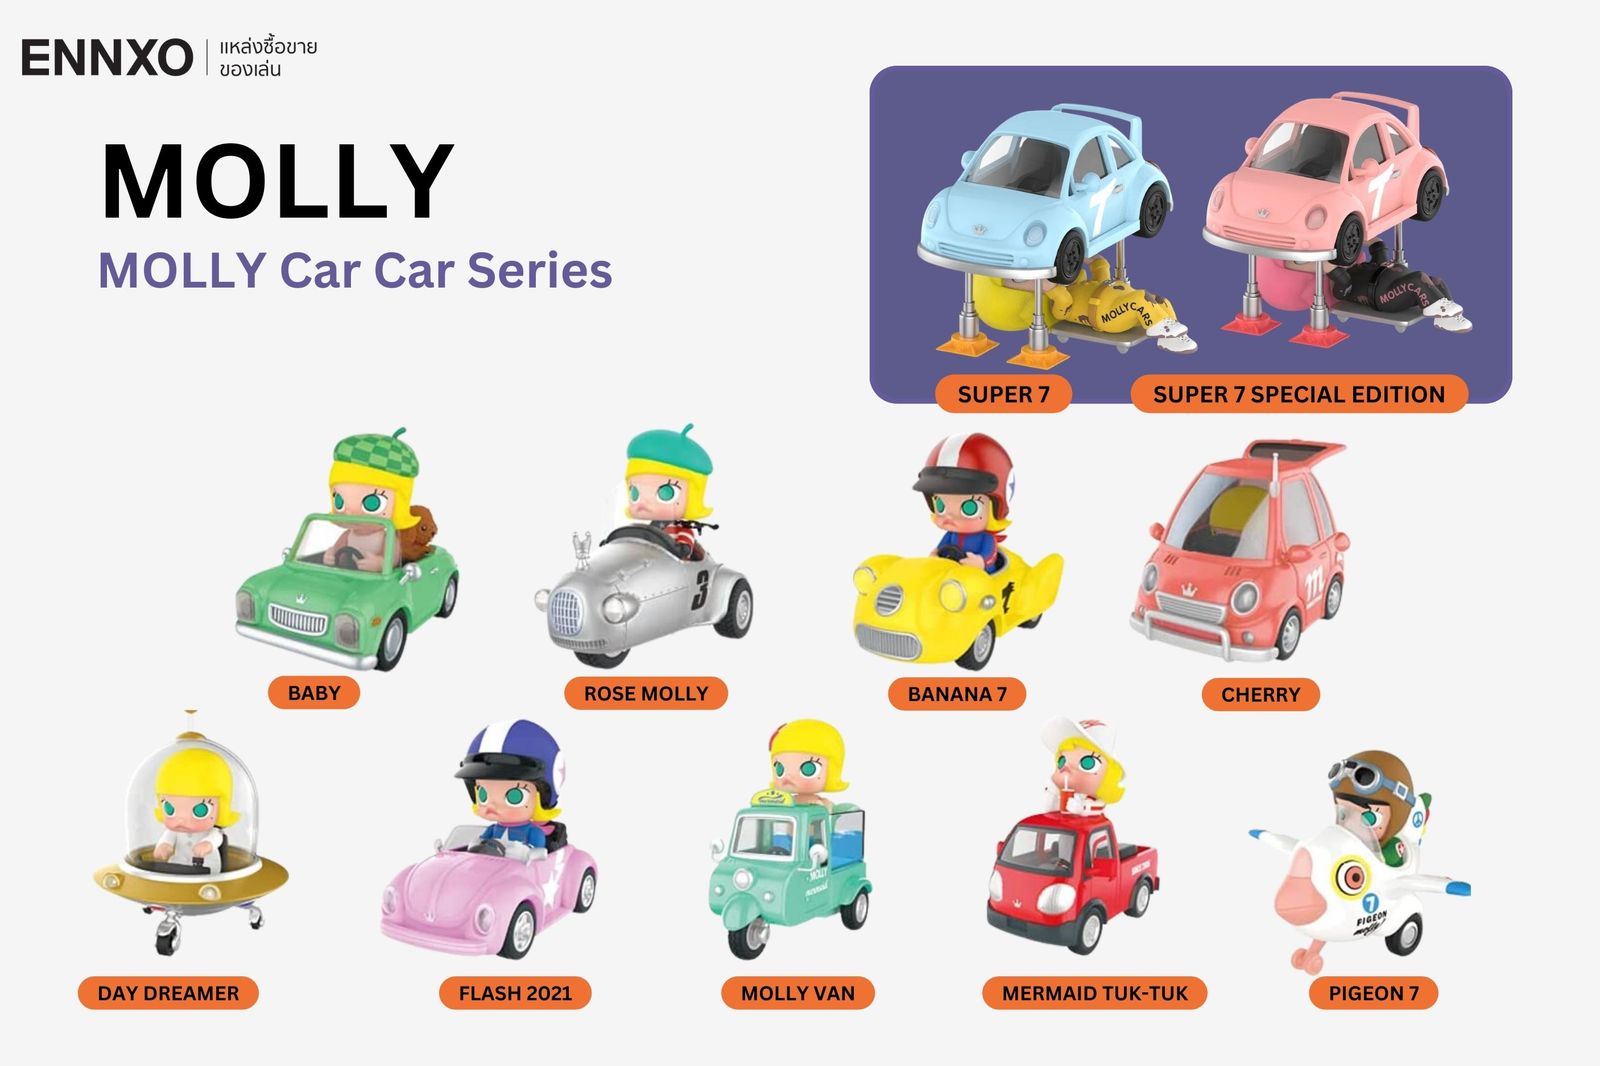 รวมคอลเลคชันมอลลี่ทั้งหมด MOLLY Car Car Series